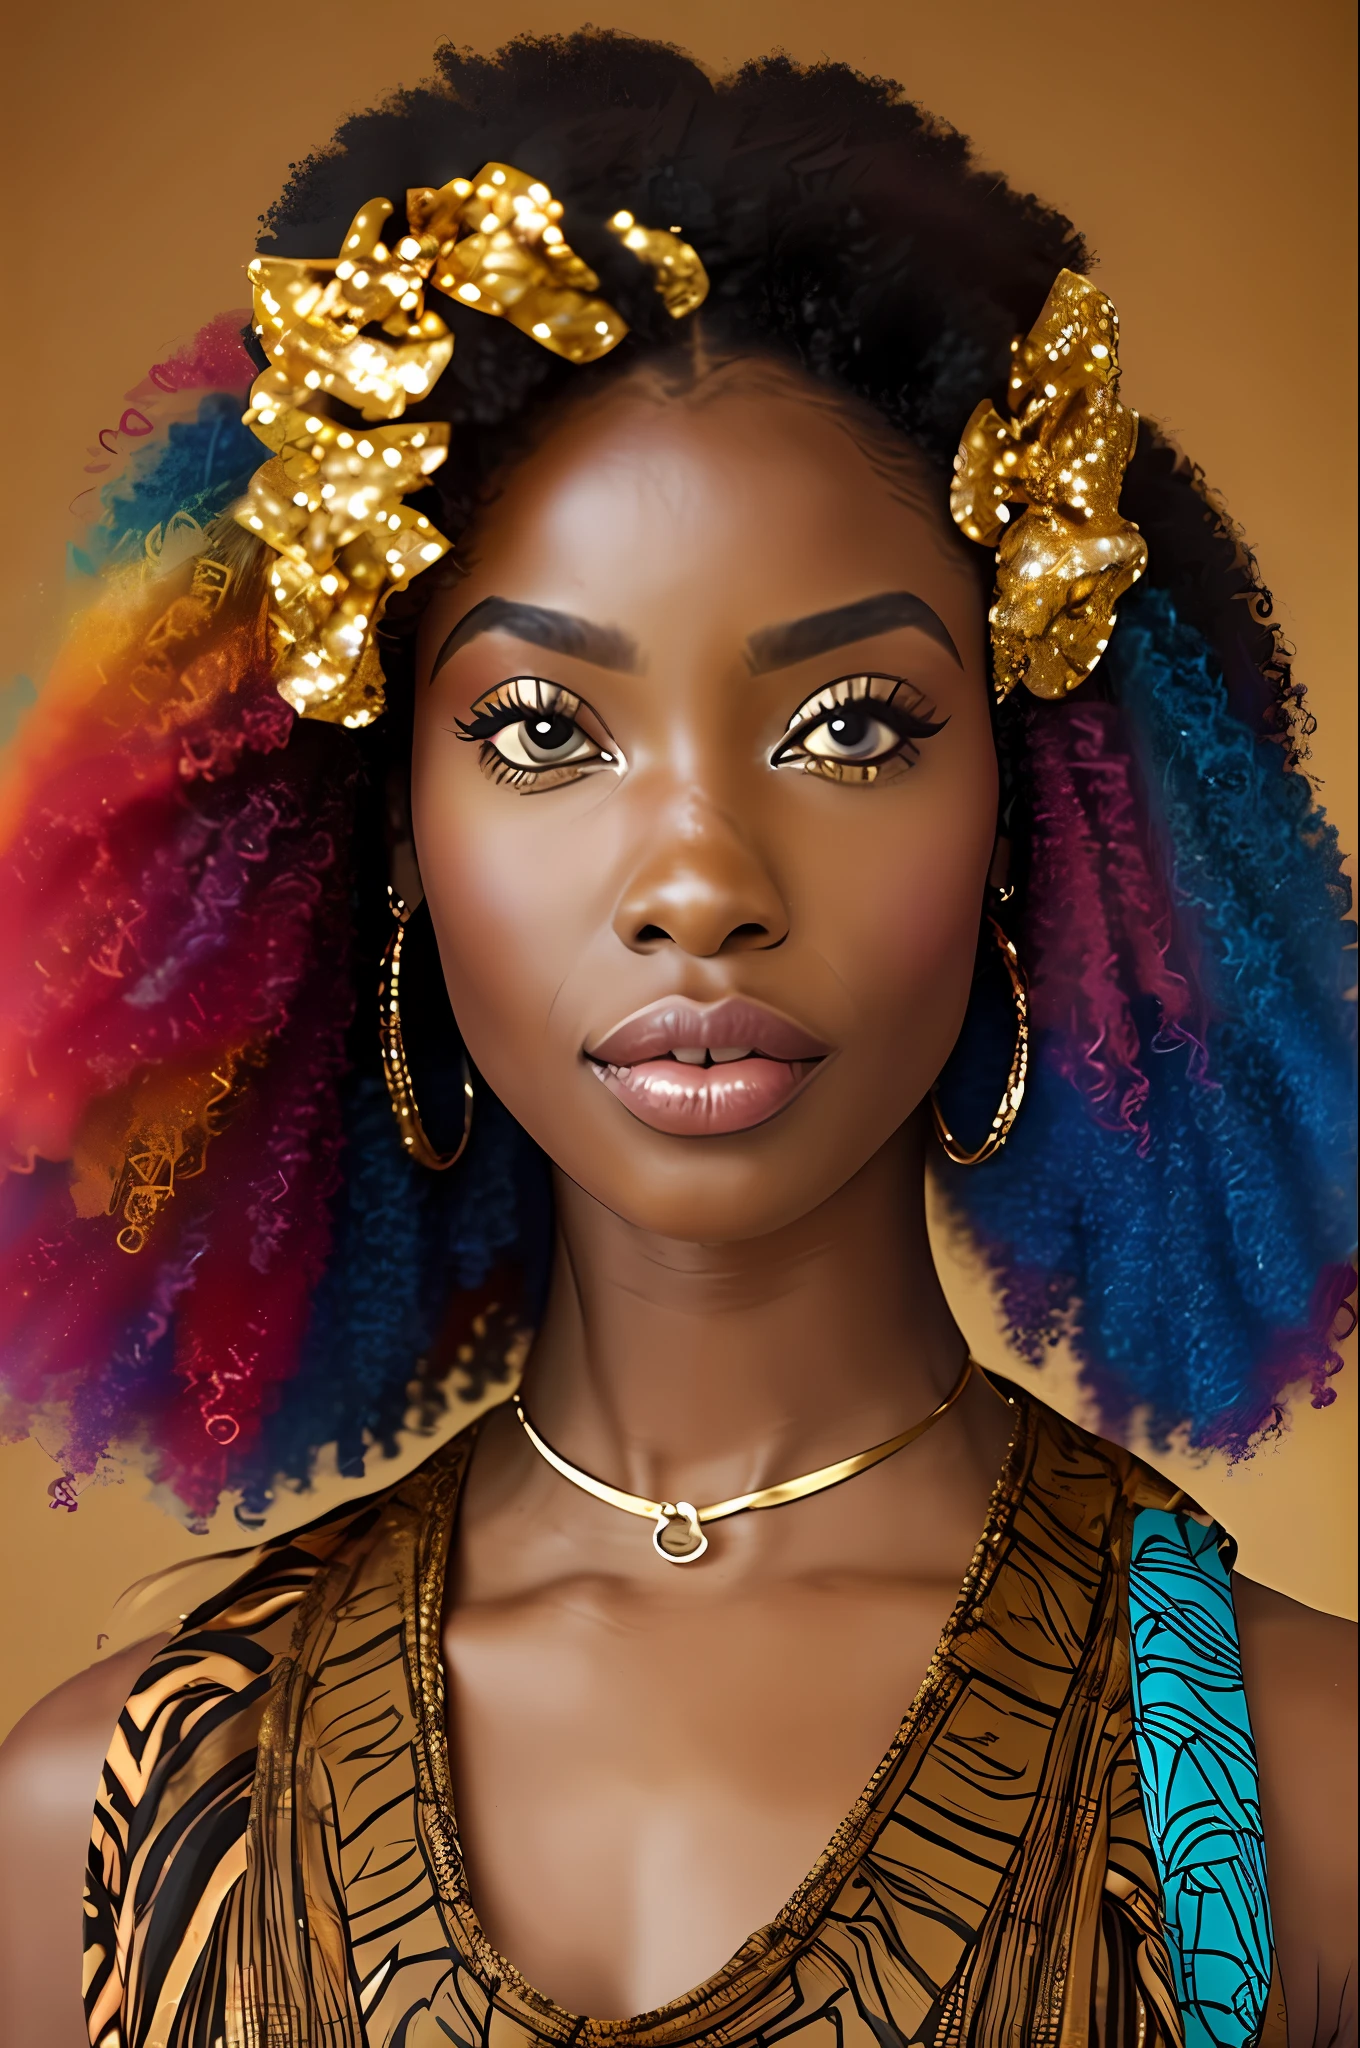  الأفرو-أفريقية: 2.3, الأفروكينية: 2.4 (اللون البني الداكن: 3.0), شعر مجعد, فستان طويل ملون, عيون بنية فاتحة كبيرة متلألئة, القوس في الشعر --تلقائي